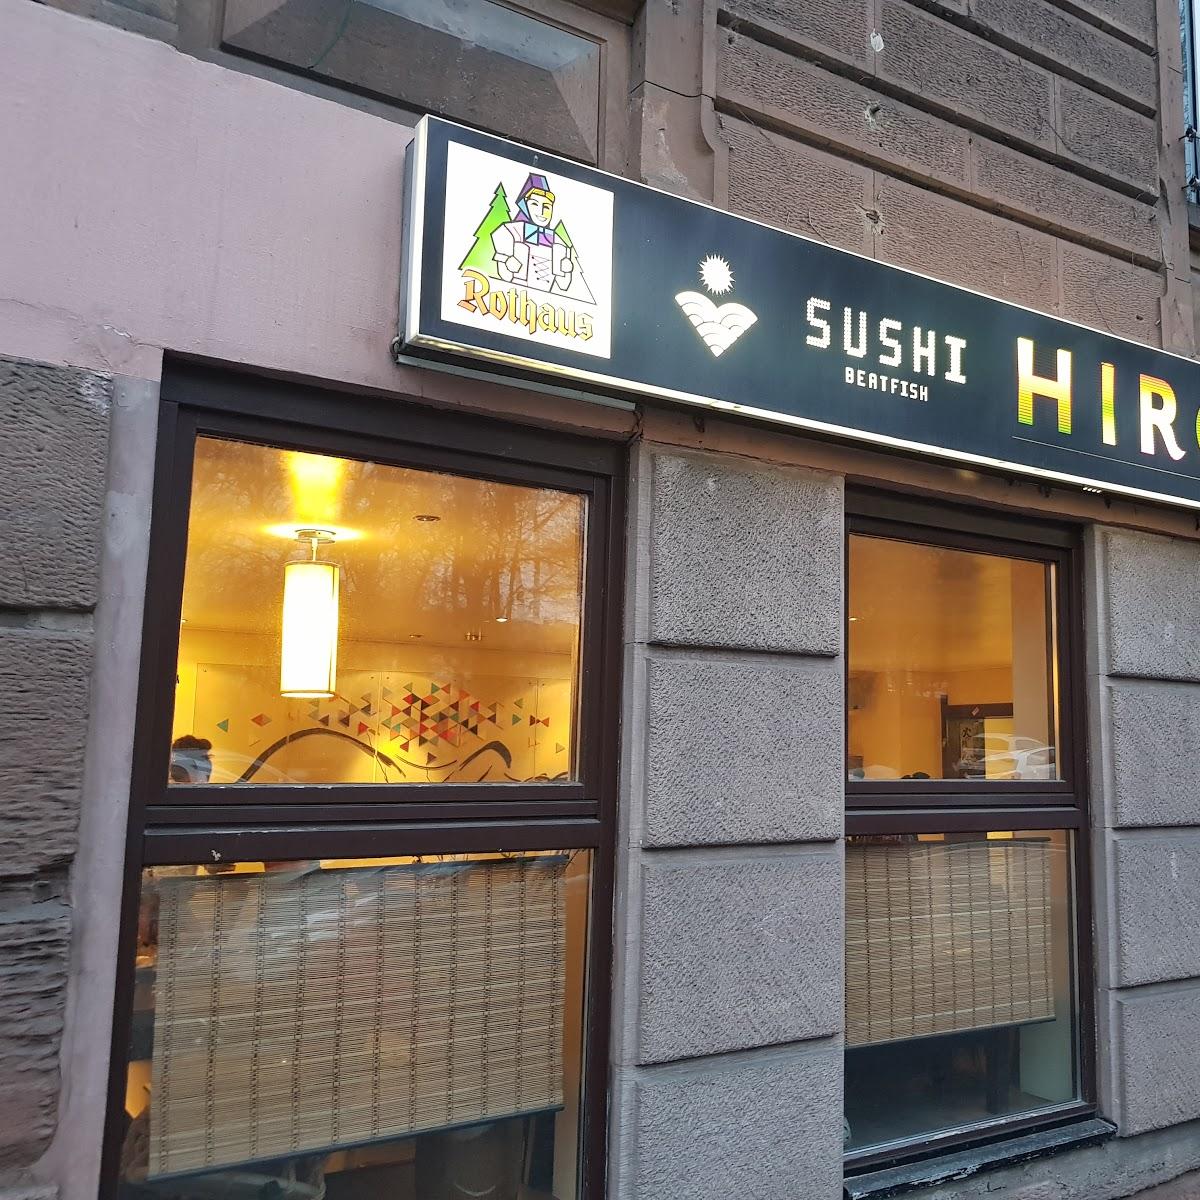 Restaurant "Hiro" in  Stuttgart